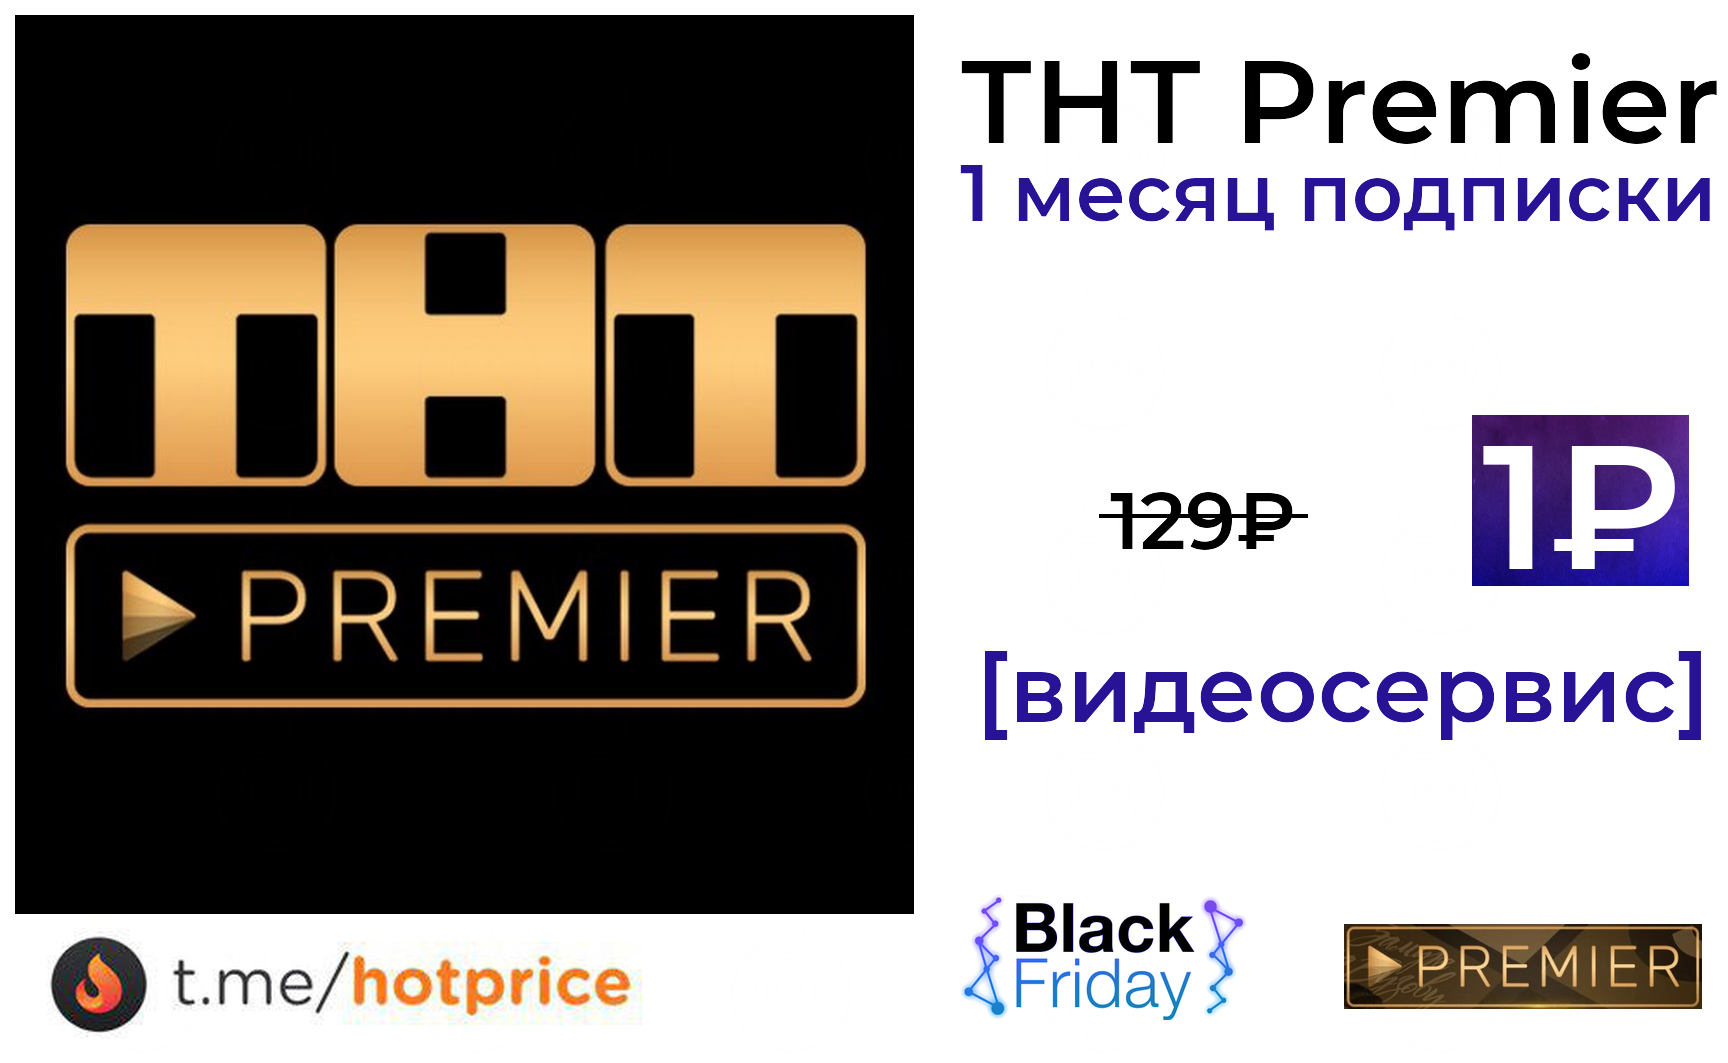 Кинотеатр премьер бесплатная подписка. ТНТ Premier. ТНТ Premier логотип. Кинотеатр Premier логотип.